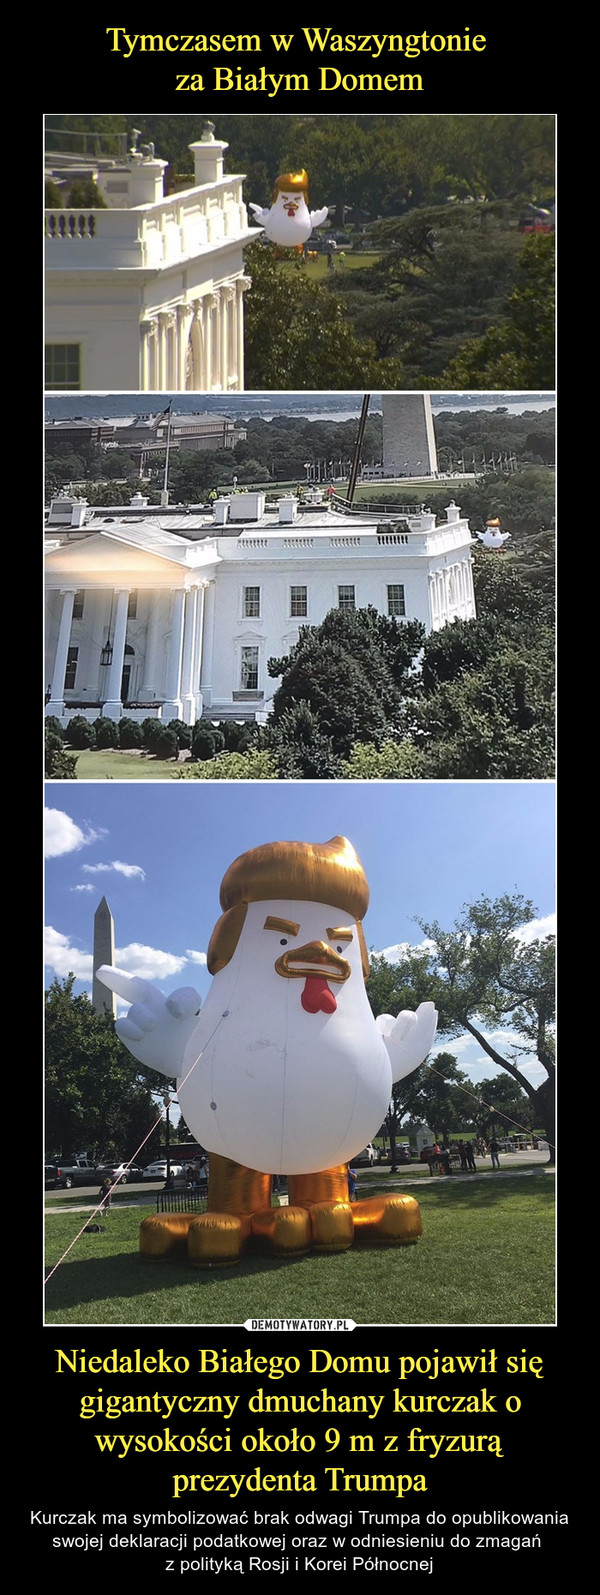 Niedaleko Białego Domu pojawił się gigantyczny dmuchany kurczak o wysokości około 9 m z fryzurą prezydenta Trumpa – Kurczak ma symbolizować brak odwagi Trumpa do opublikowania swojej deklaracji podatkowej oraz w odniesieniu do zmagań z polityką Rosji i Korei Północnej 